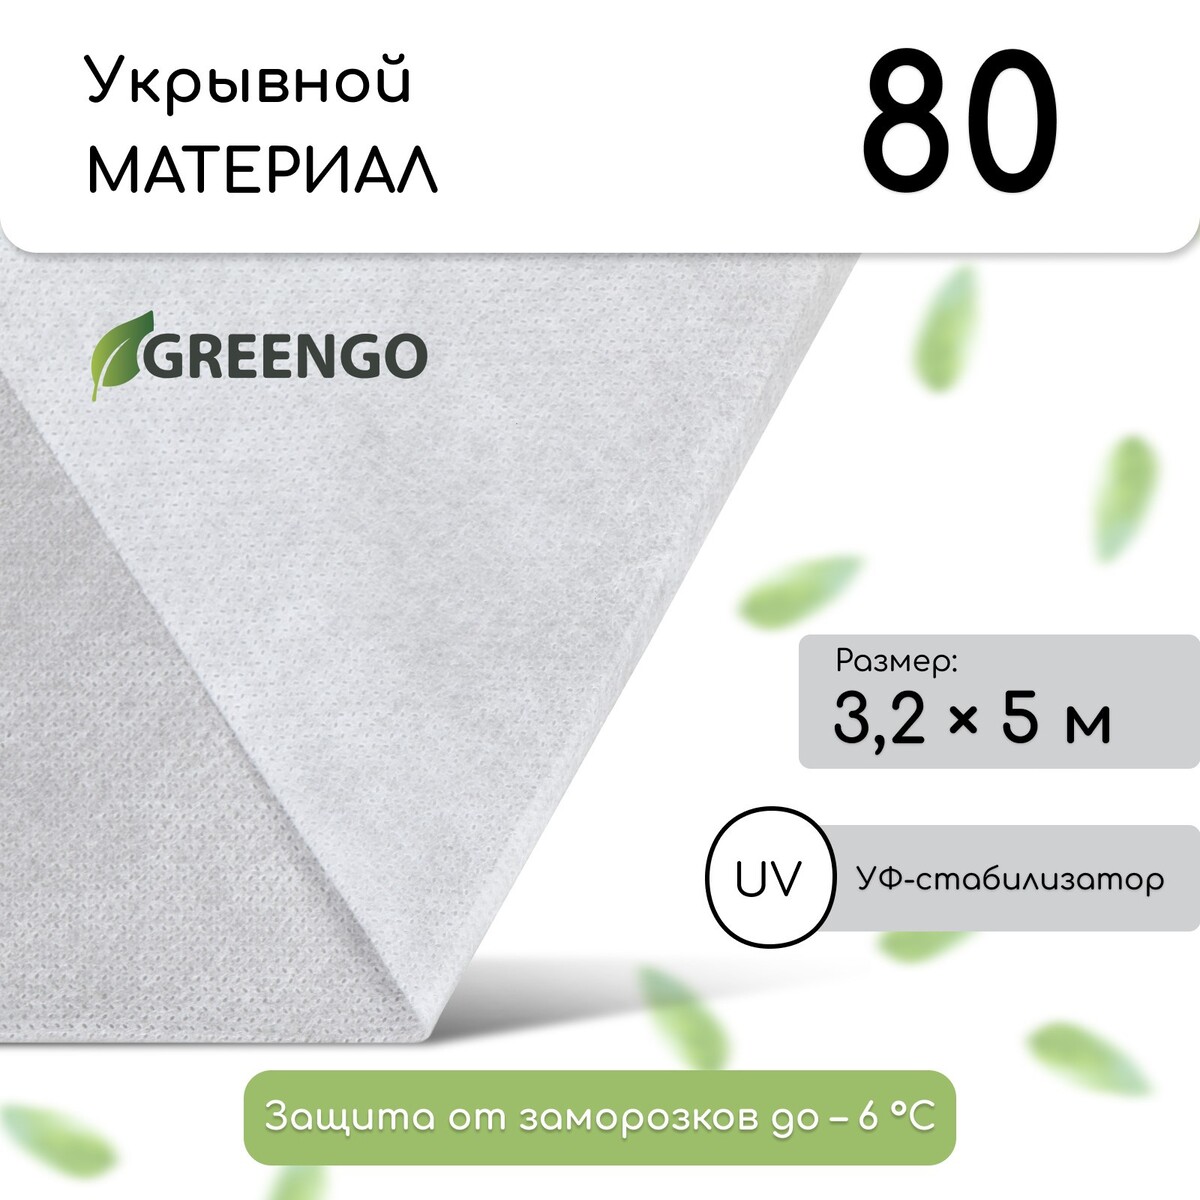 Материал укрывной, 5 × 3,2 м, плотность 80 г/м², спанбонд с уф-стабилизатором, белый, greengo, эконом 20%